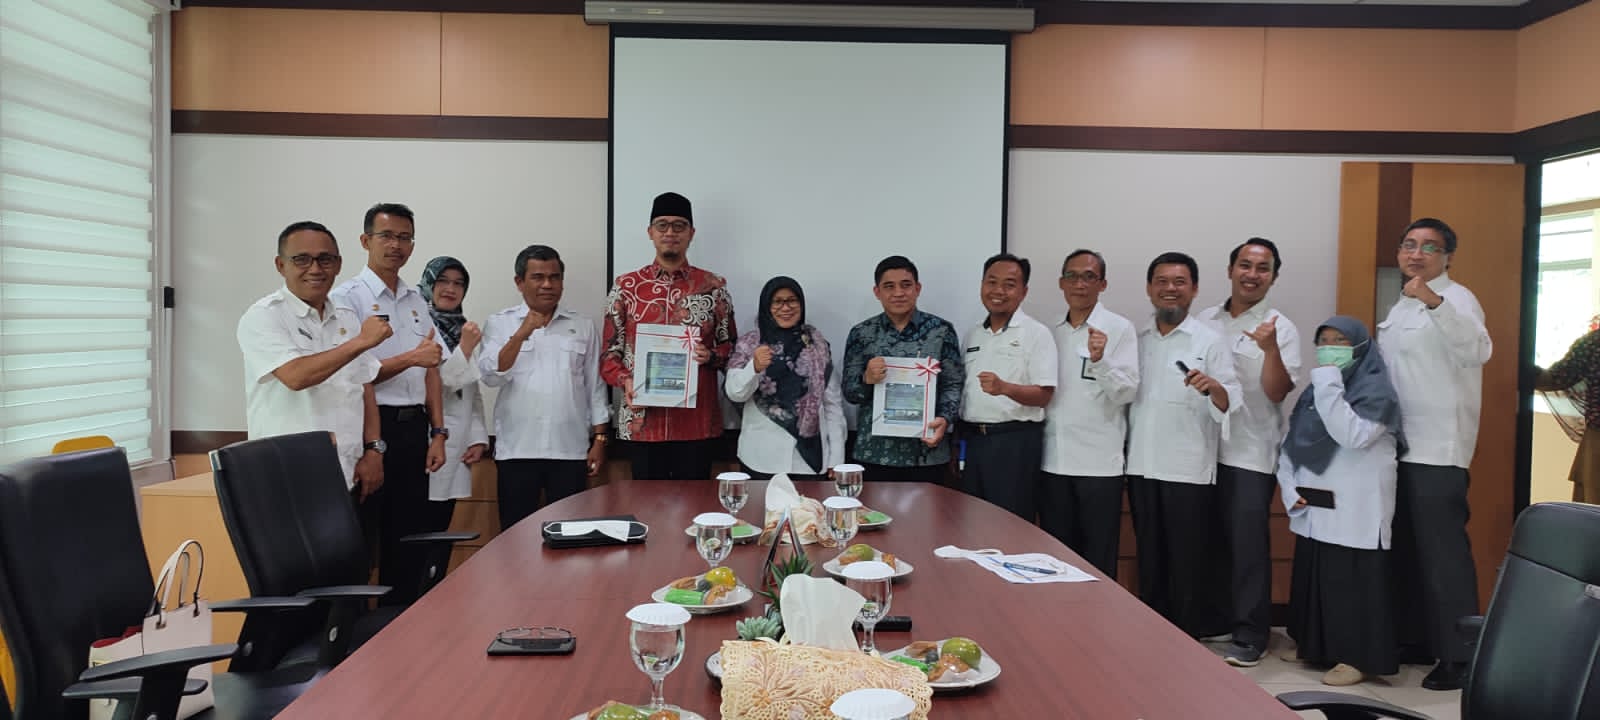 Walikota Bukittinggi dan Ketua DPRD Bukittinggi foto bersama dengan Ketua BPK Perwakilan Sumbar di Kantor Perwakilan BPK RI Sumbar di Padang, Rabu (25/05). IST.